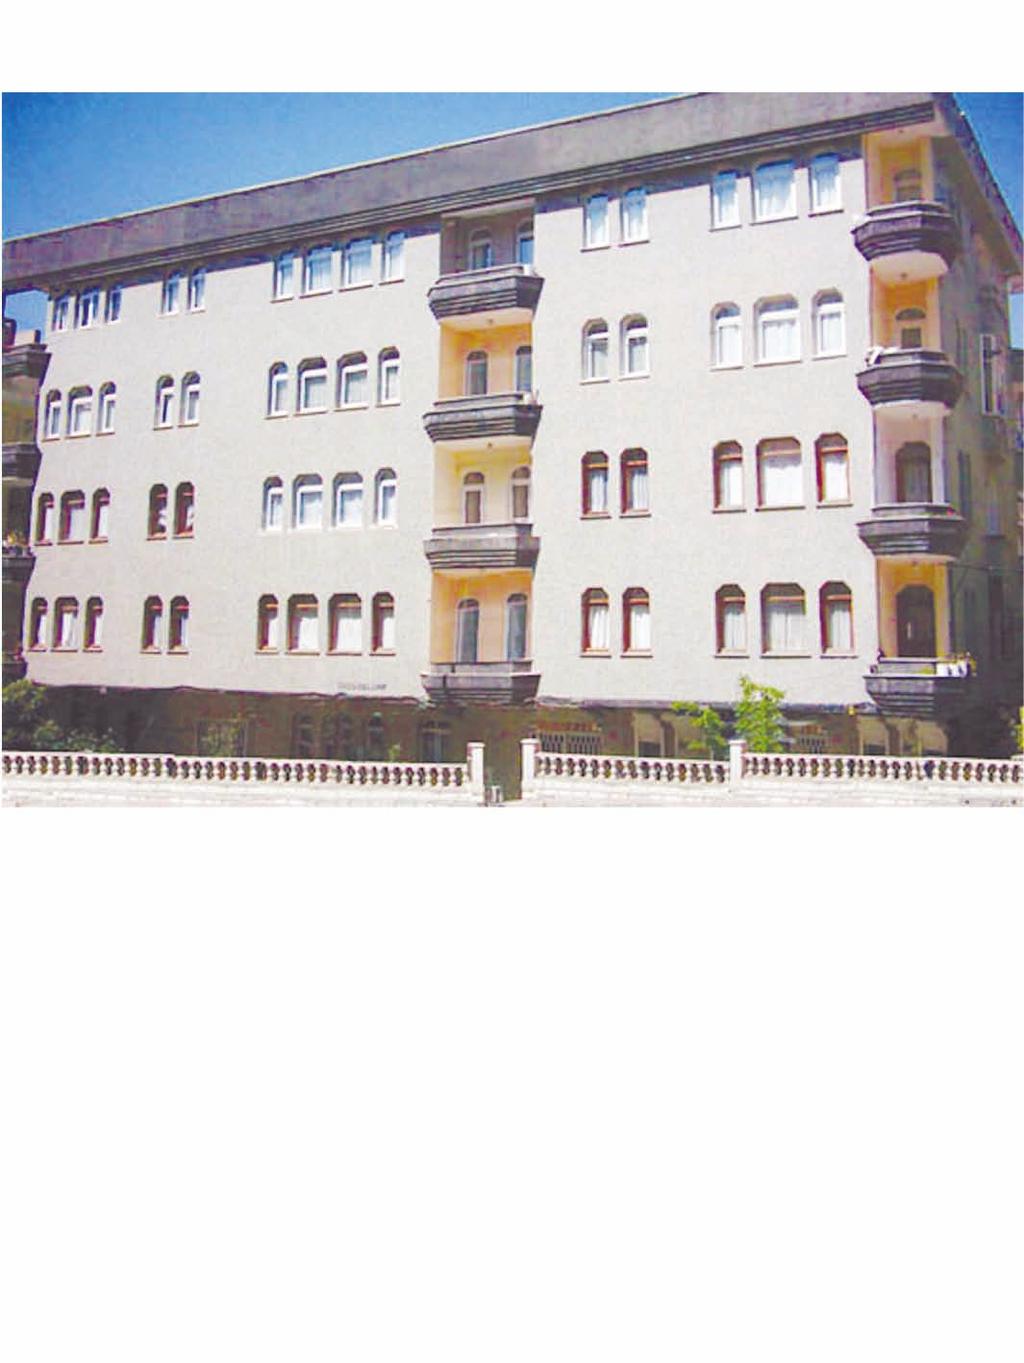 Gözüoğlu Apartmanı / Gözüoğlu Apartment Building ASDEM YAPI ASDEM CONSTRUCTION Proje Açıklaması: 1995 yılında 540 m 2 arsa üzerinde 12 normal daire ve 3 dubleks daireden oluşan toplam 15 daire inşa